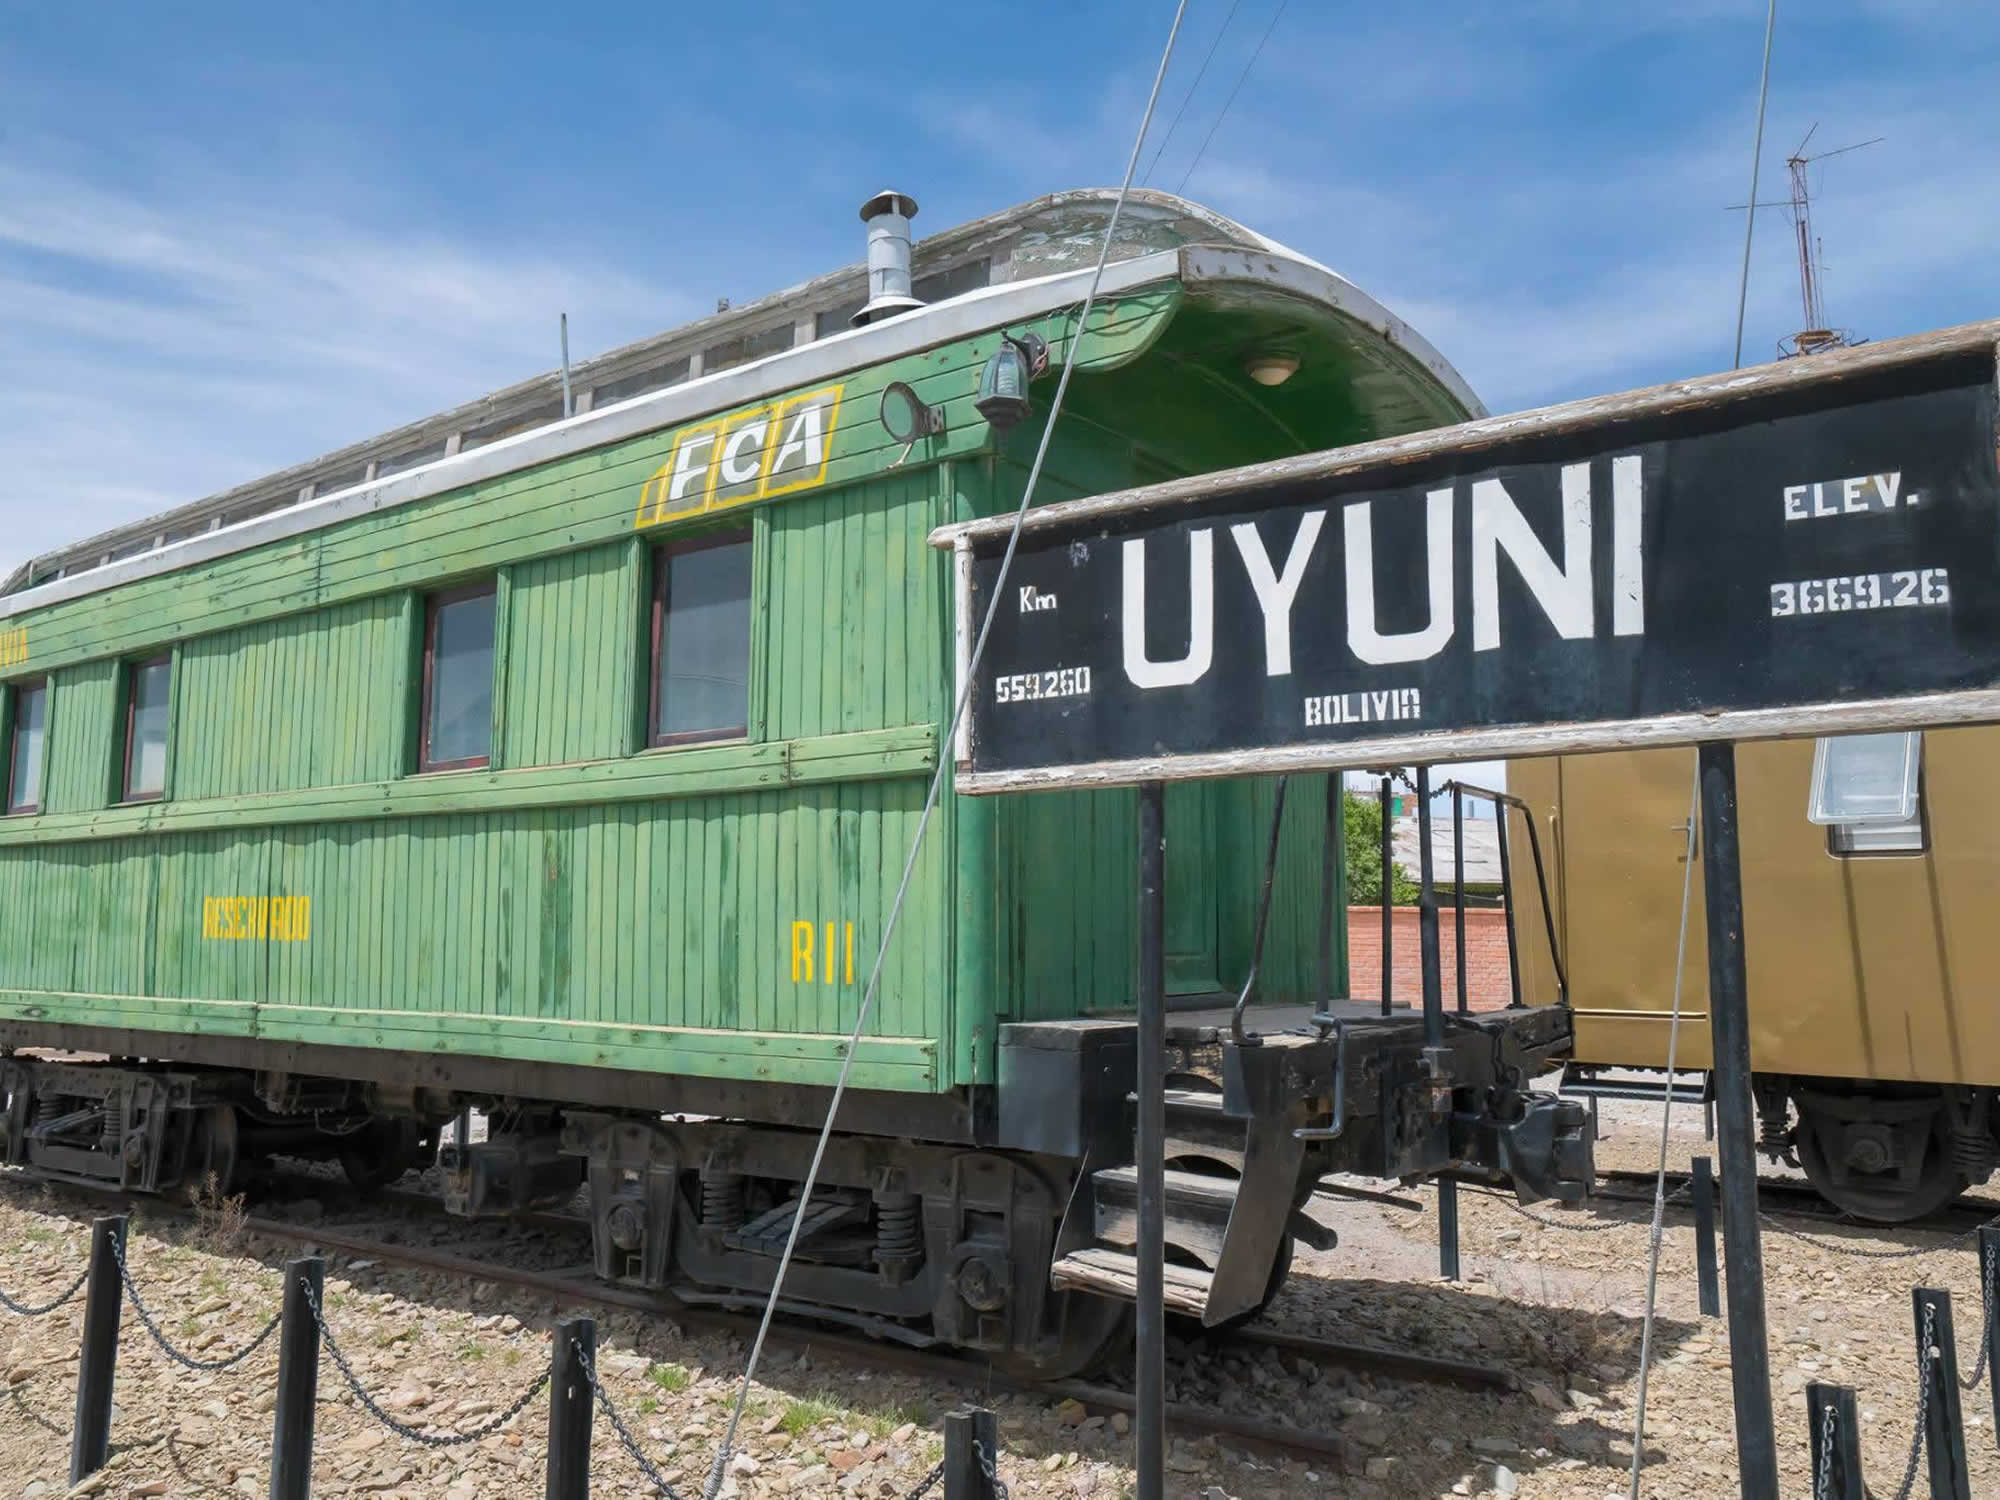 Town of Uyuni, Uyuni